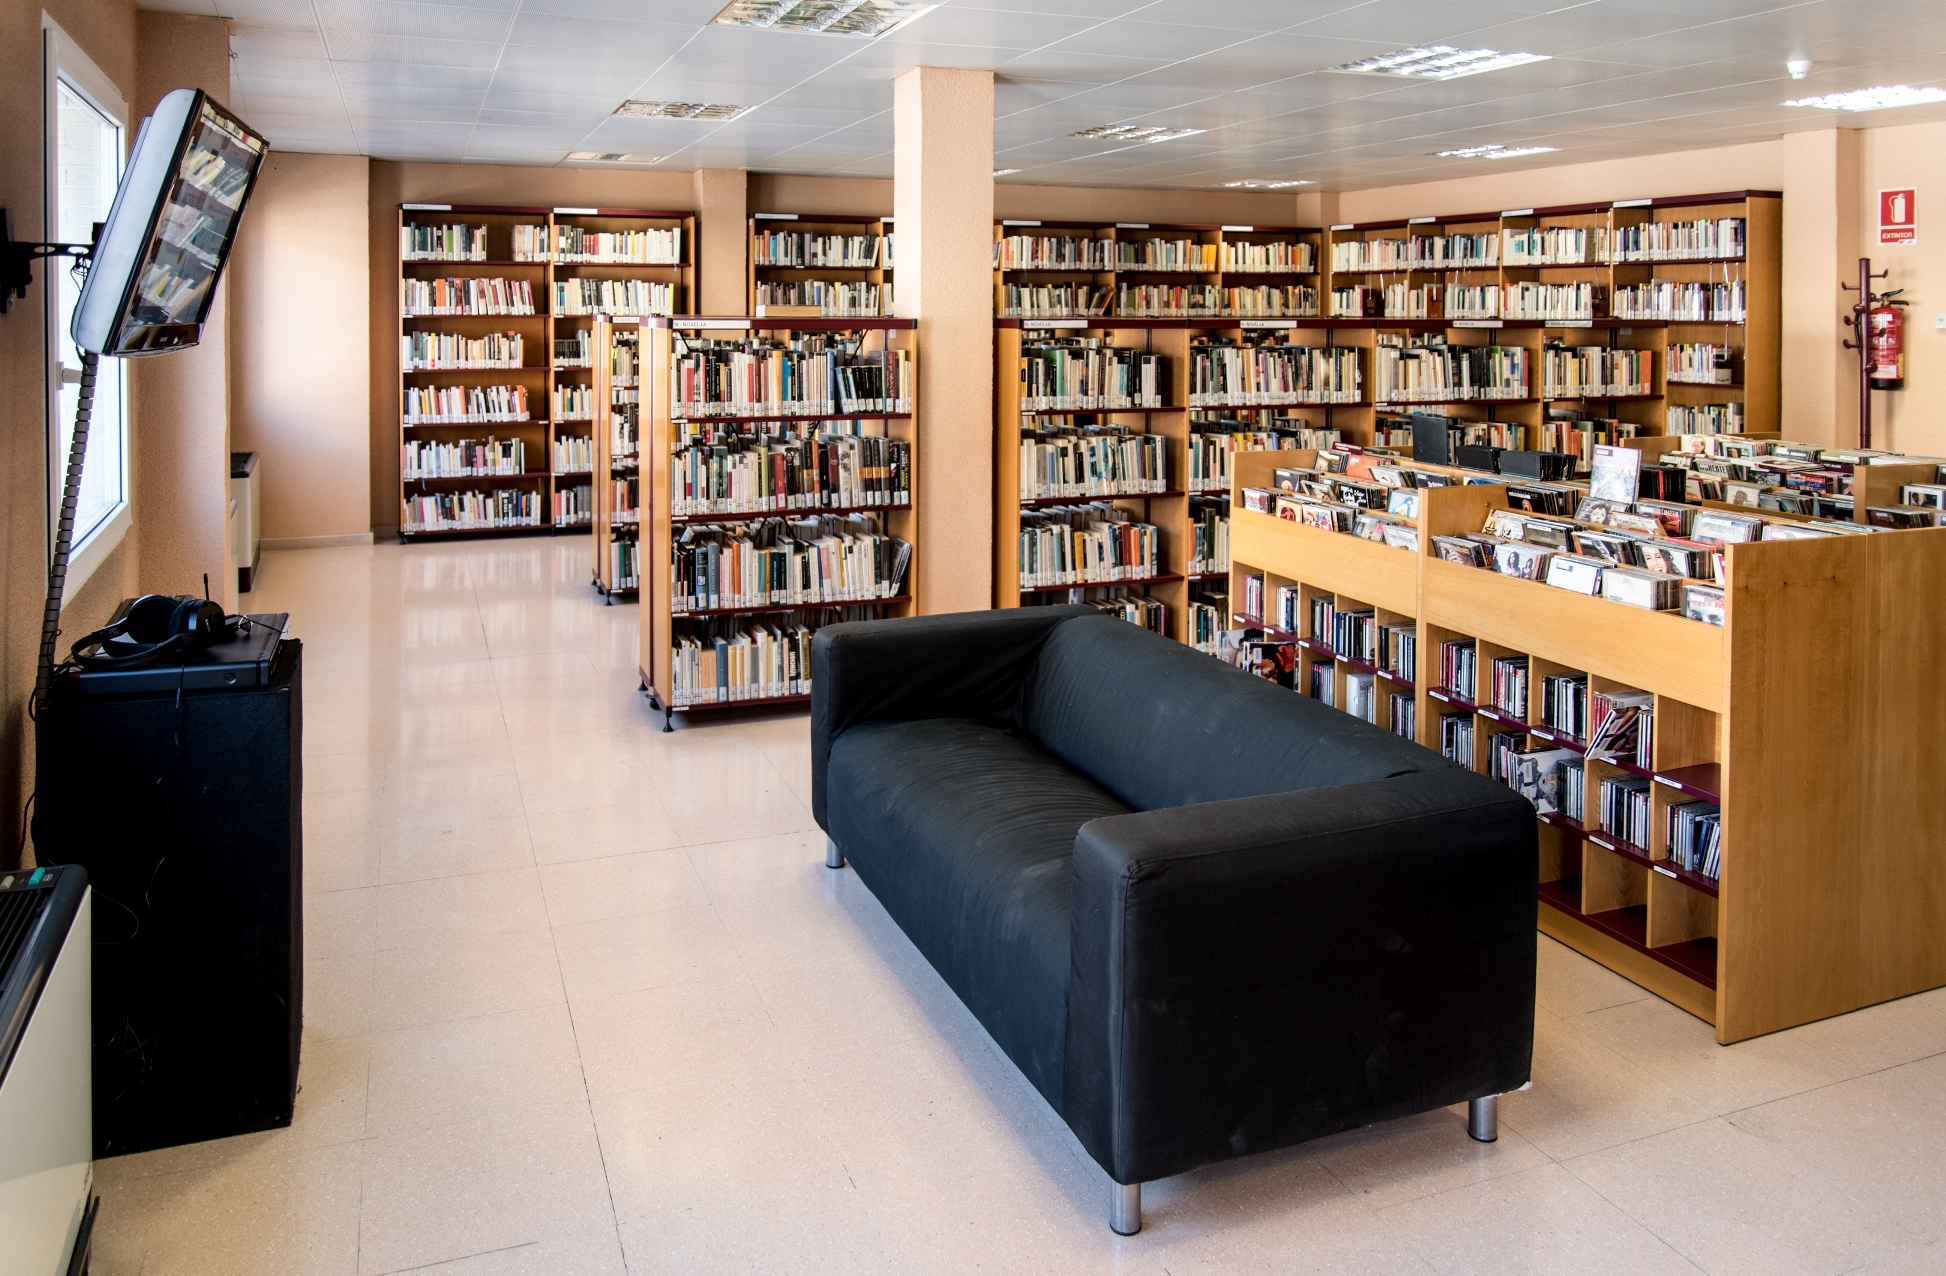 La biblioteca ofereix als seus usuaris participar d’un Club de Lectura virtual sobre 10 films internacionals